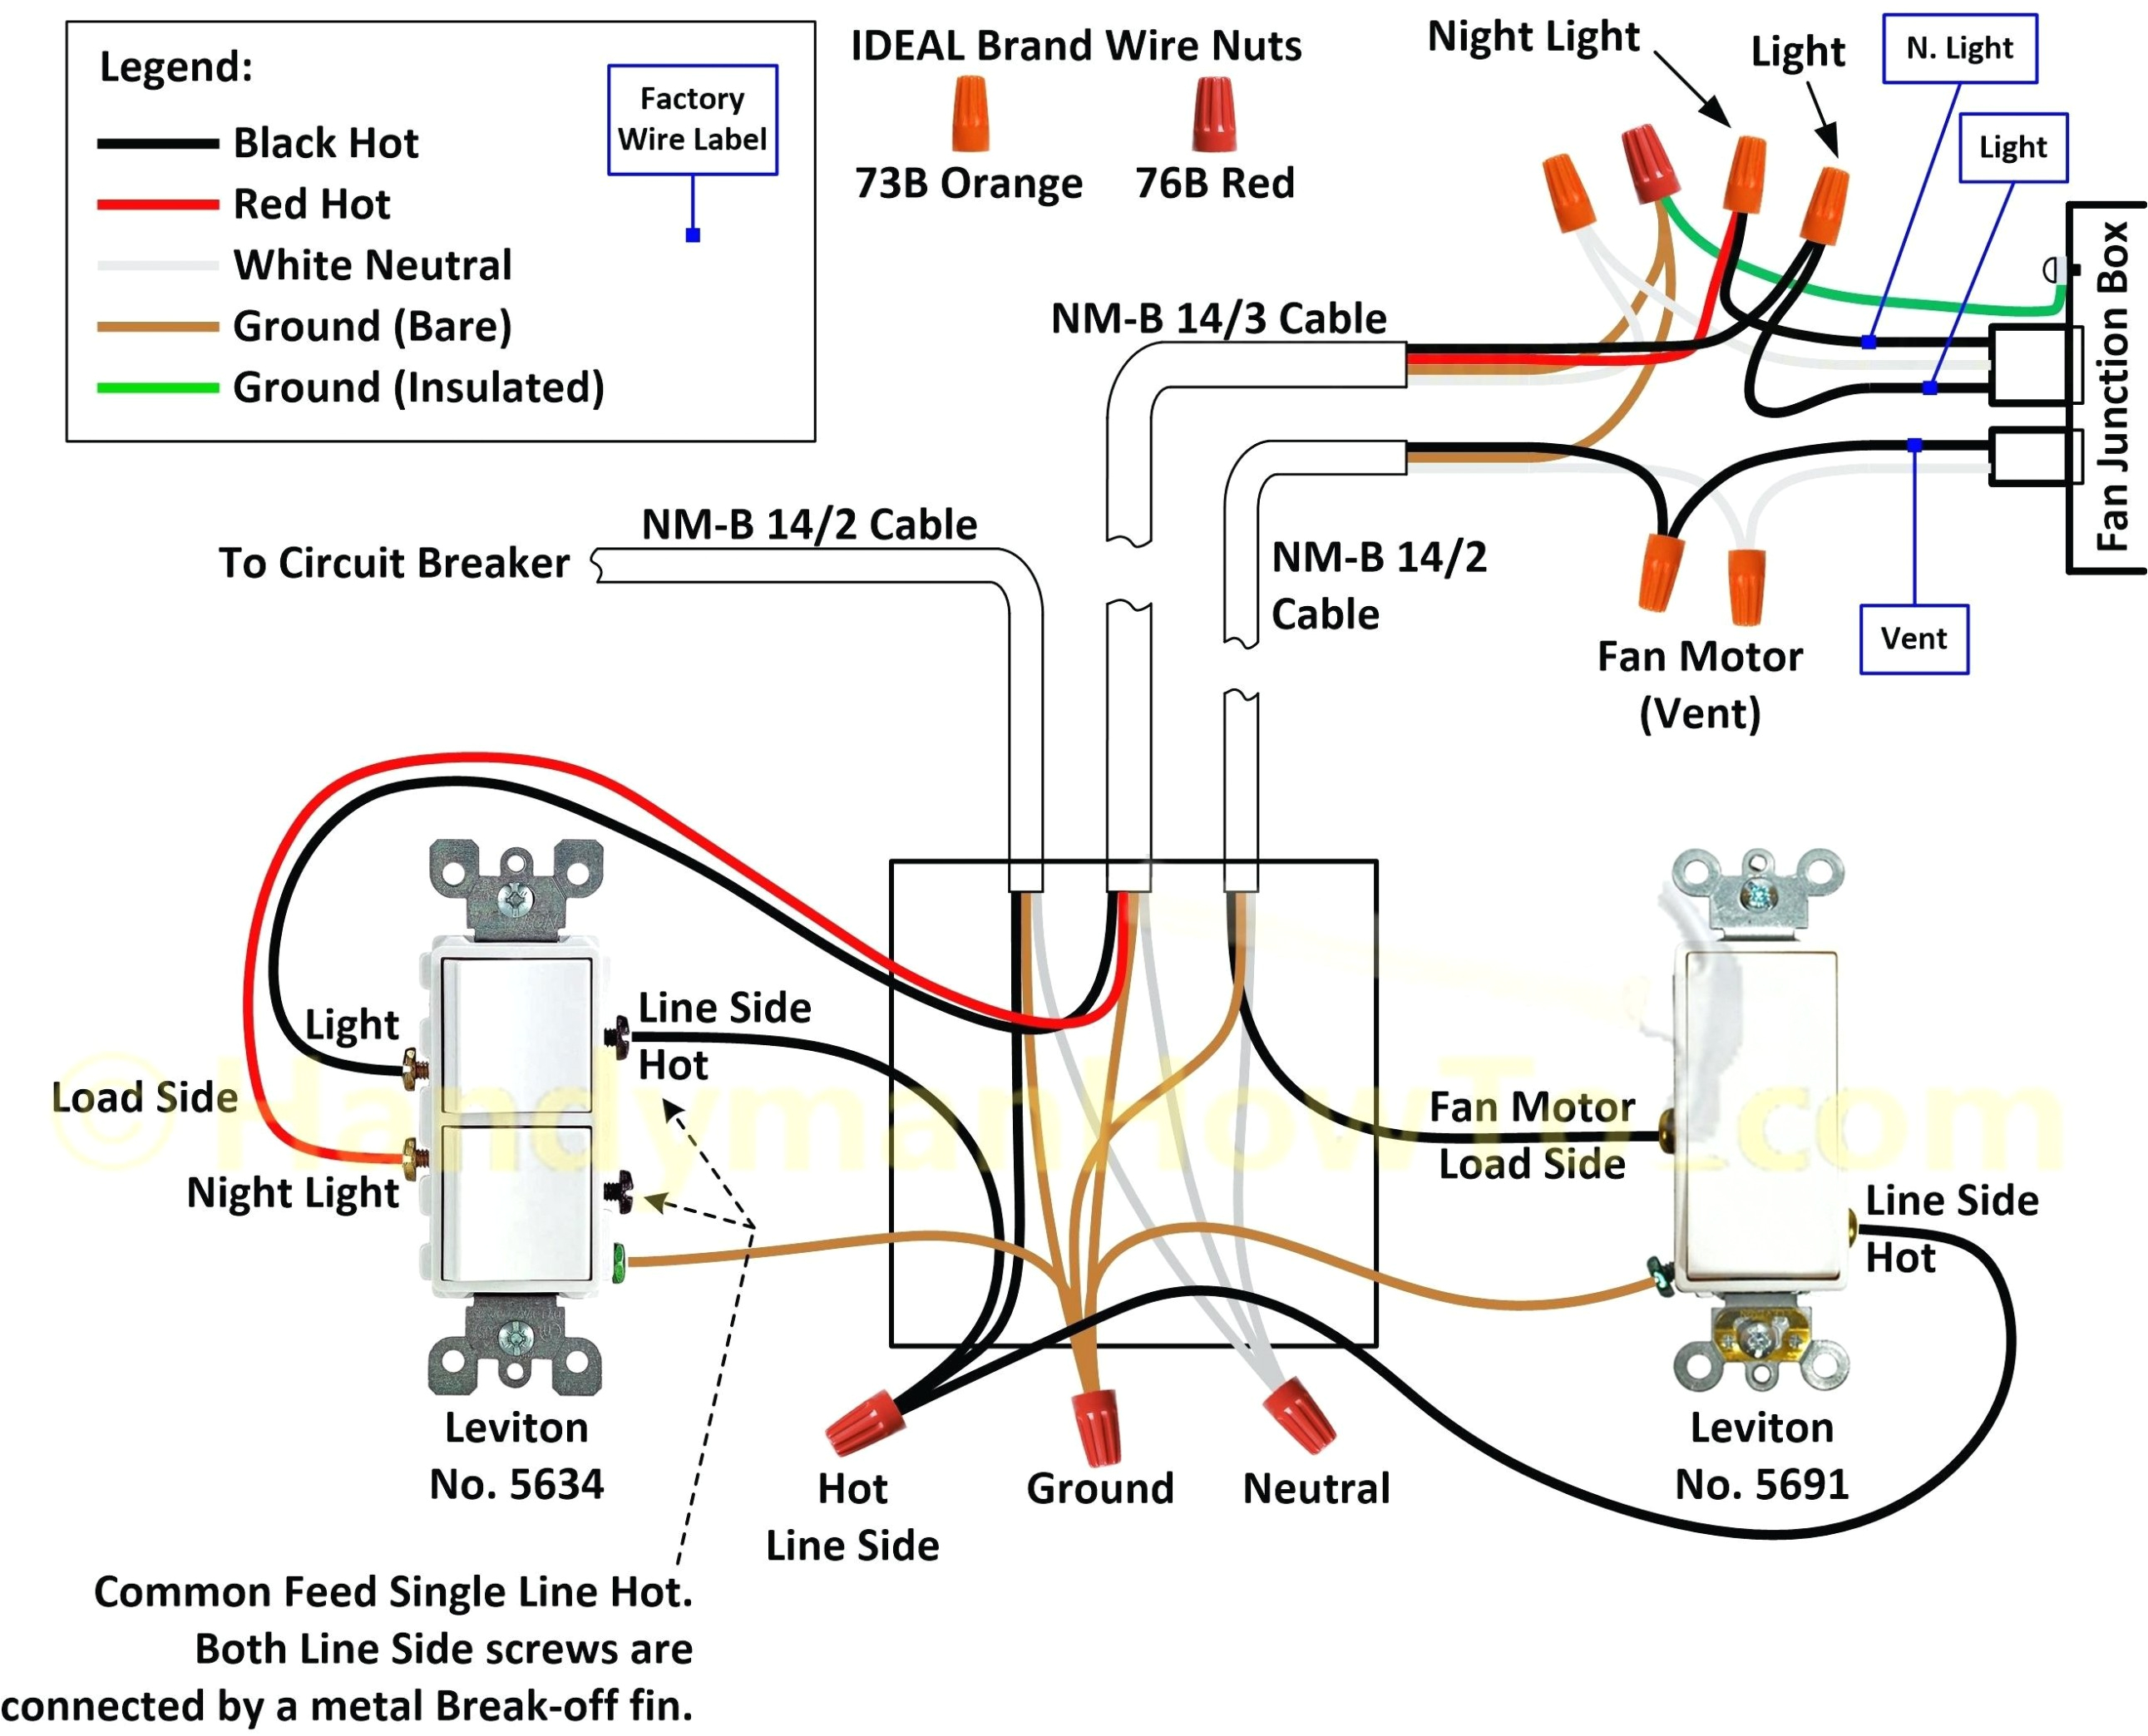 leviton 5641 wiring diagram wiring schematic diagram 33 leviton 5641 double switch wiring diagram